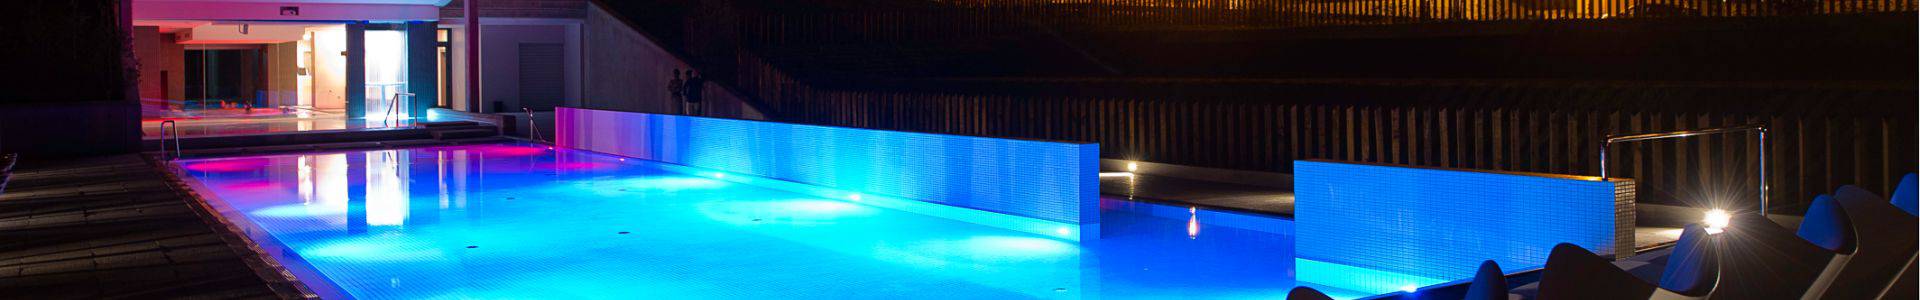 Gran Hotel Las Caldas by blau hotels - Asturie - 